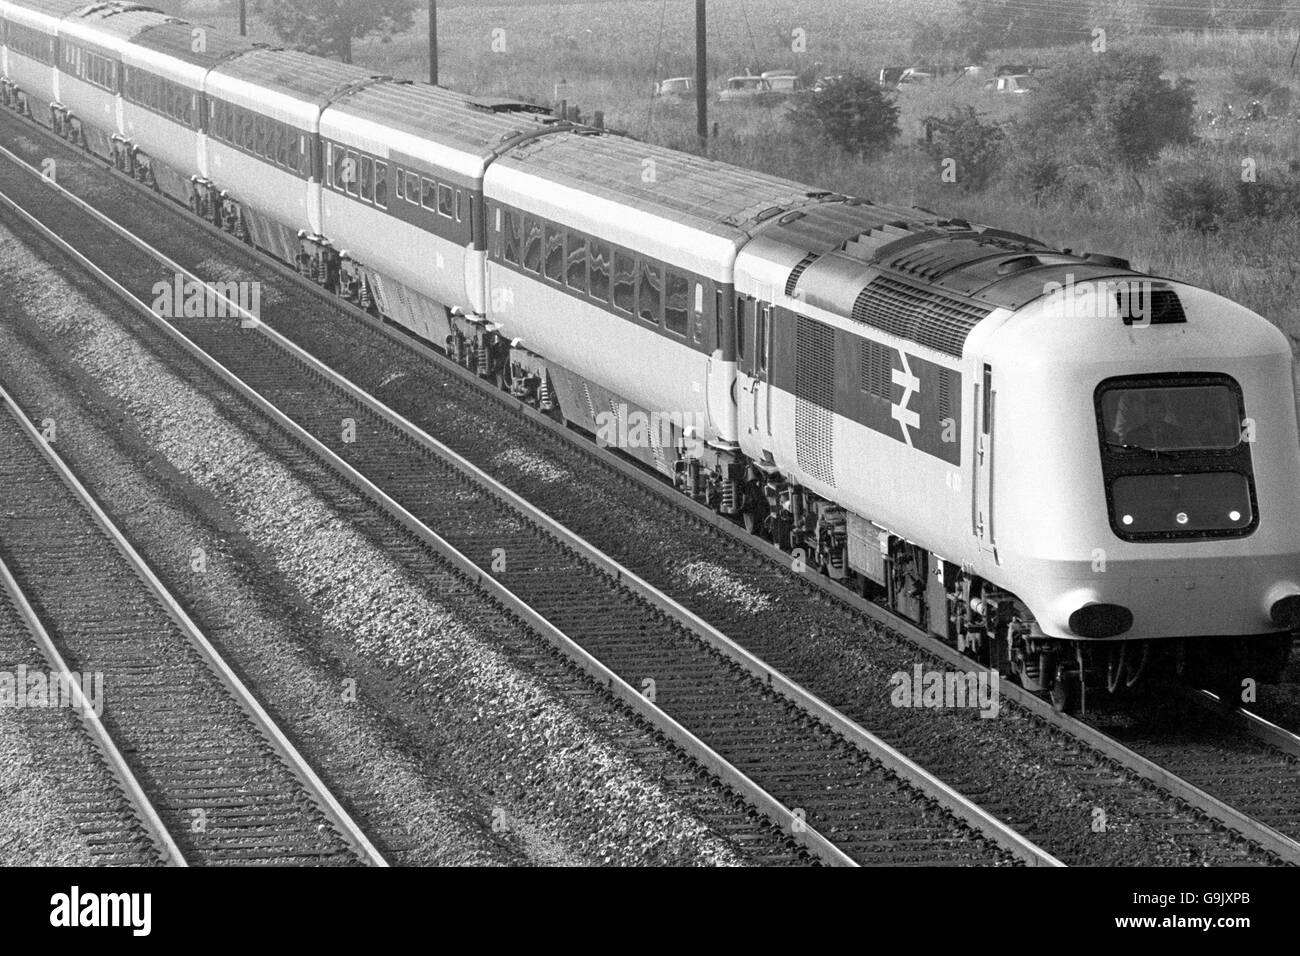 Il nuovo treno ad alta velocità della British Rail passa attraverso Biggleswade in una prova da Londra a Darlington. Si prevede che il treno a 125 miglia/h, che attualmente detiene il record mondiale del treno diesel a 143 miglia/h, opererà sulla maggior parte delle rotte interurbane. Foto Stock